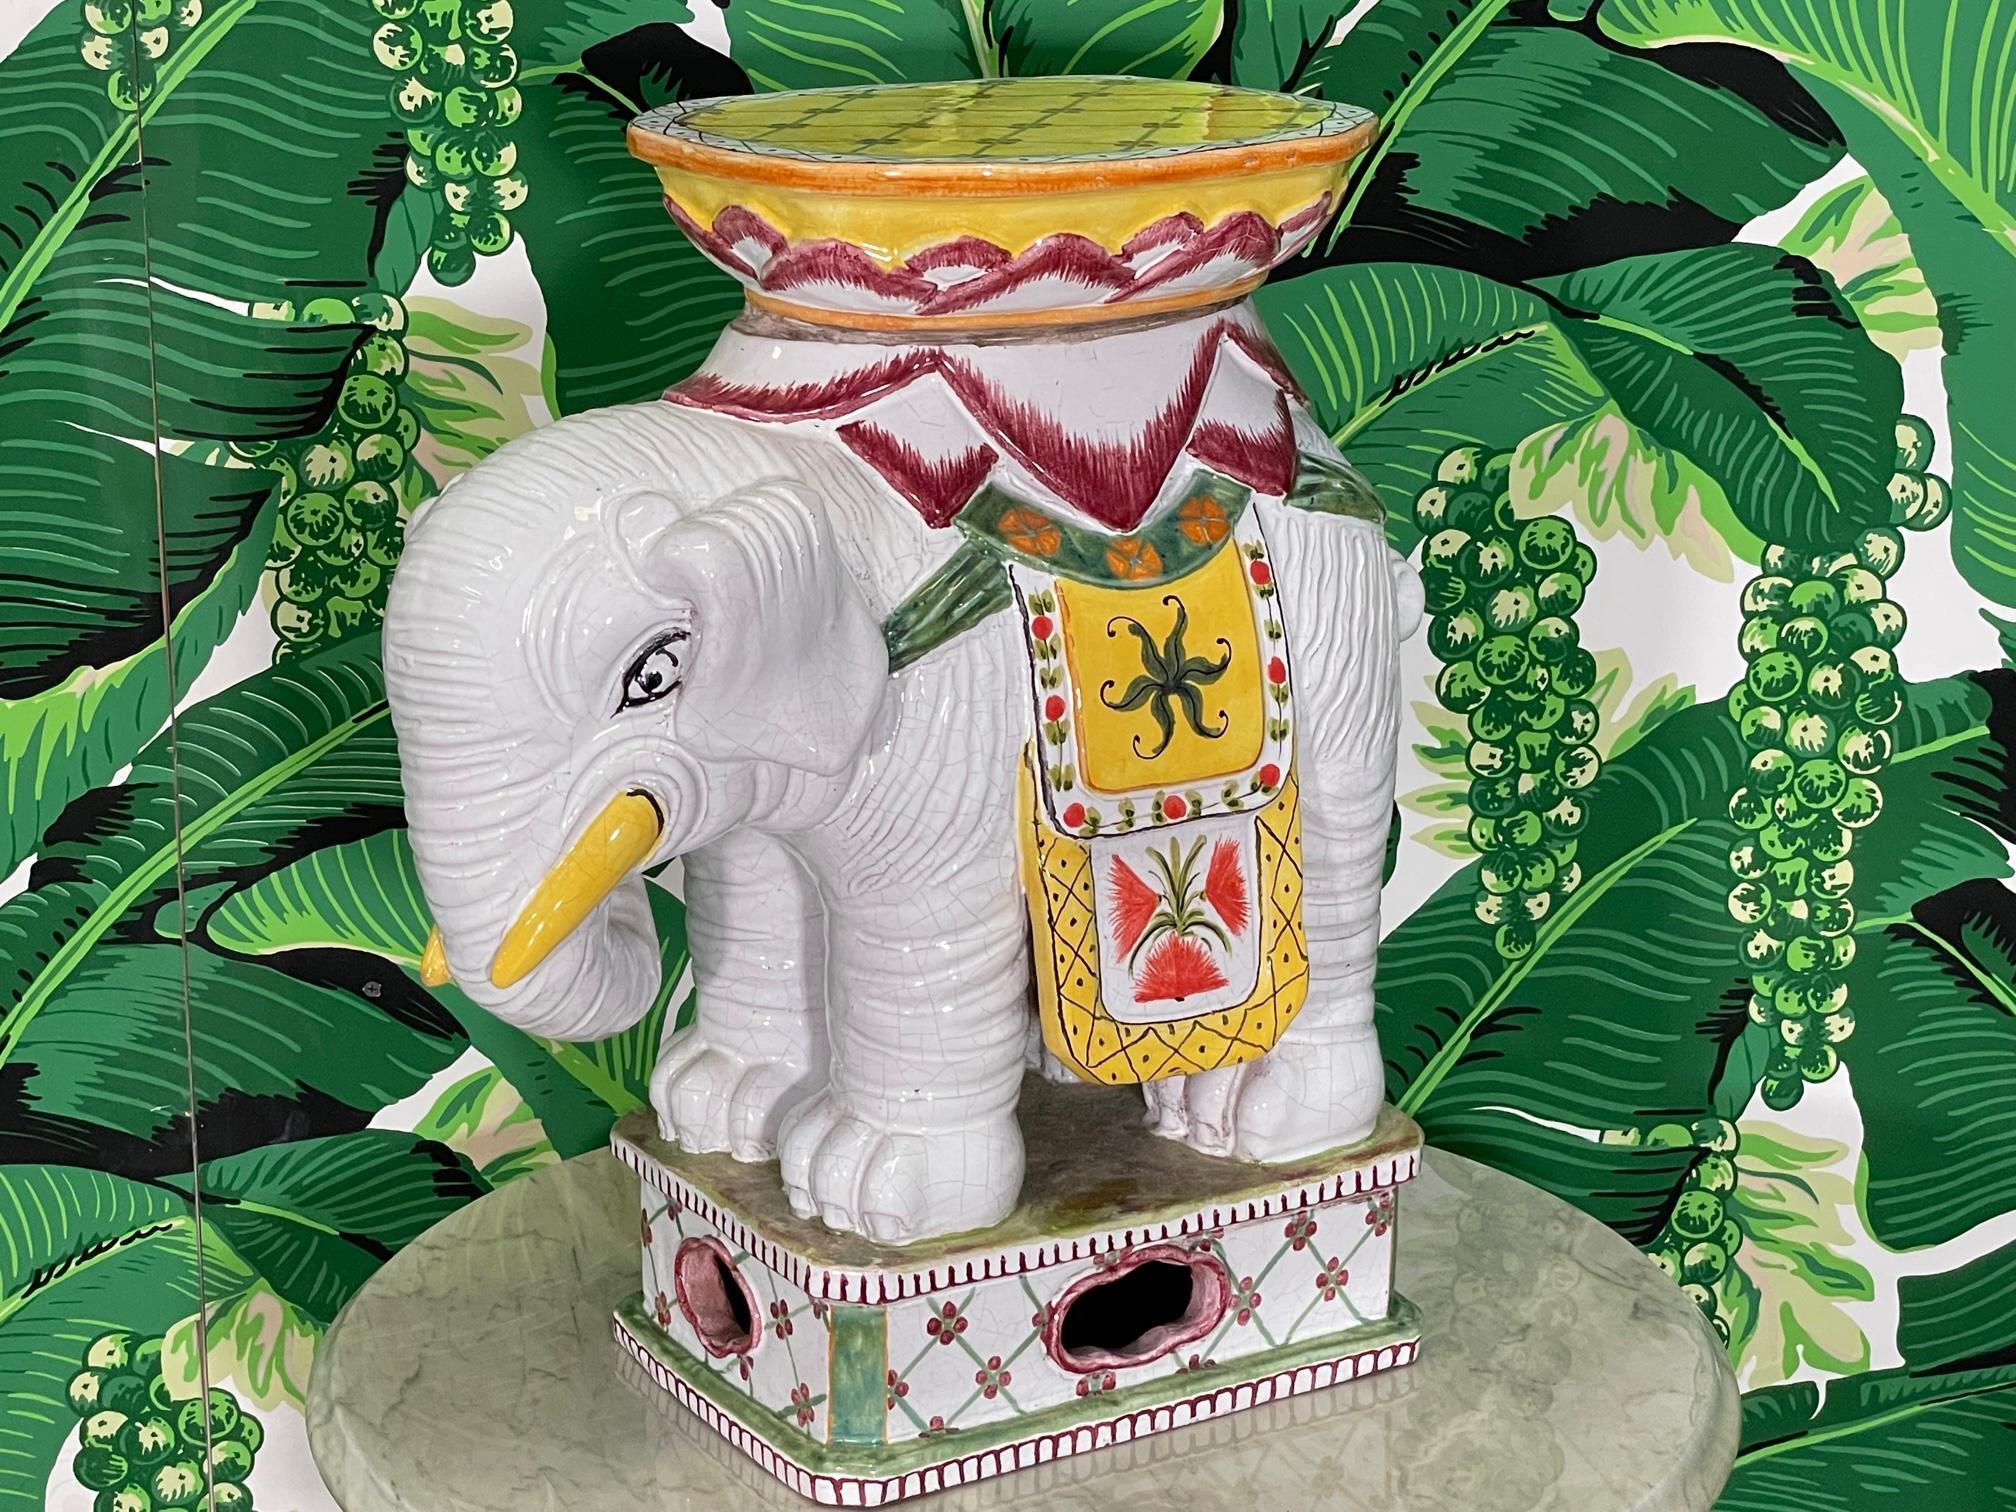 Siège de jardin pour éléphant en céramique peint à la main, pouvant être utilisé comme table d'appoint ou pouf, fini en blanc brillant avec des couleurs d'accentuation vibrantes. Bon état avec des imperfections mineures correspondant à l'âge, voir